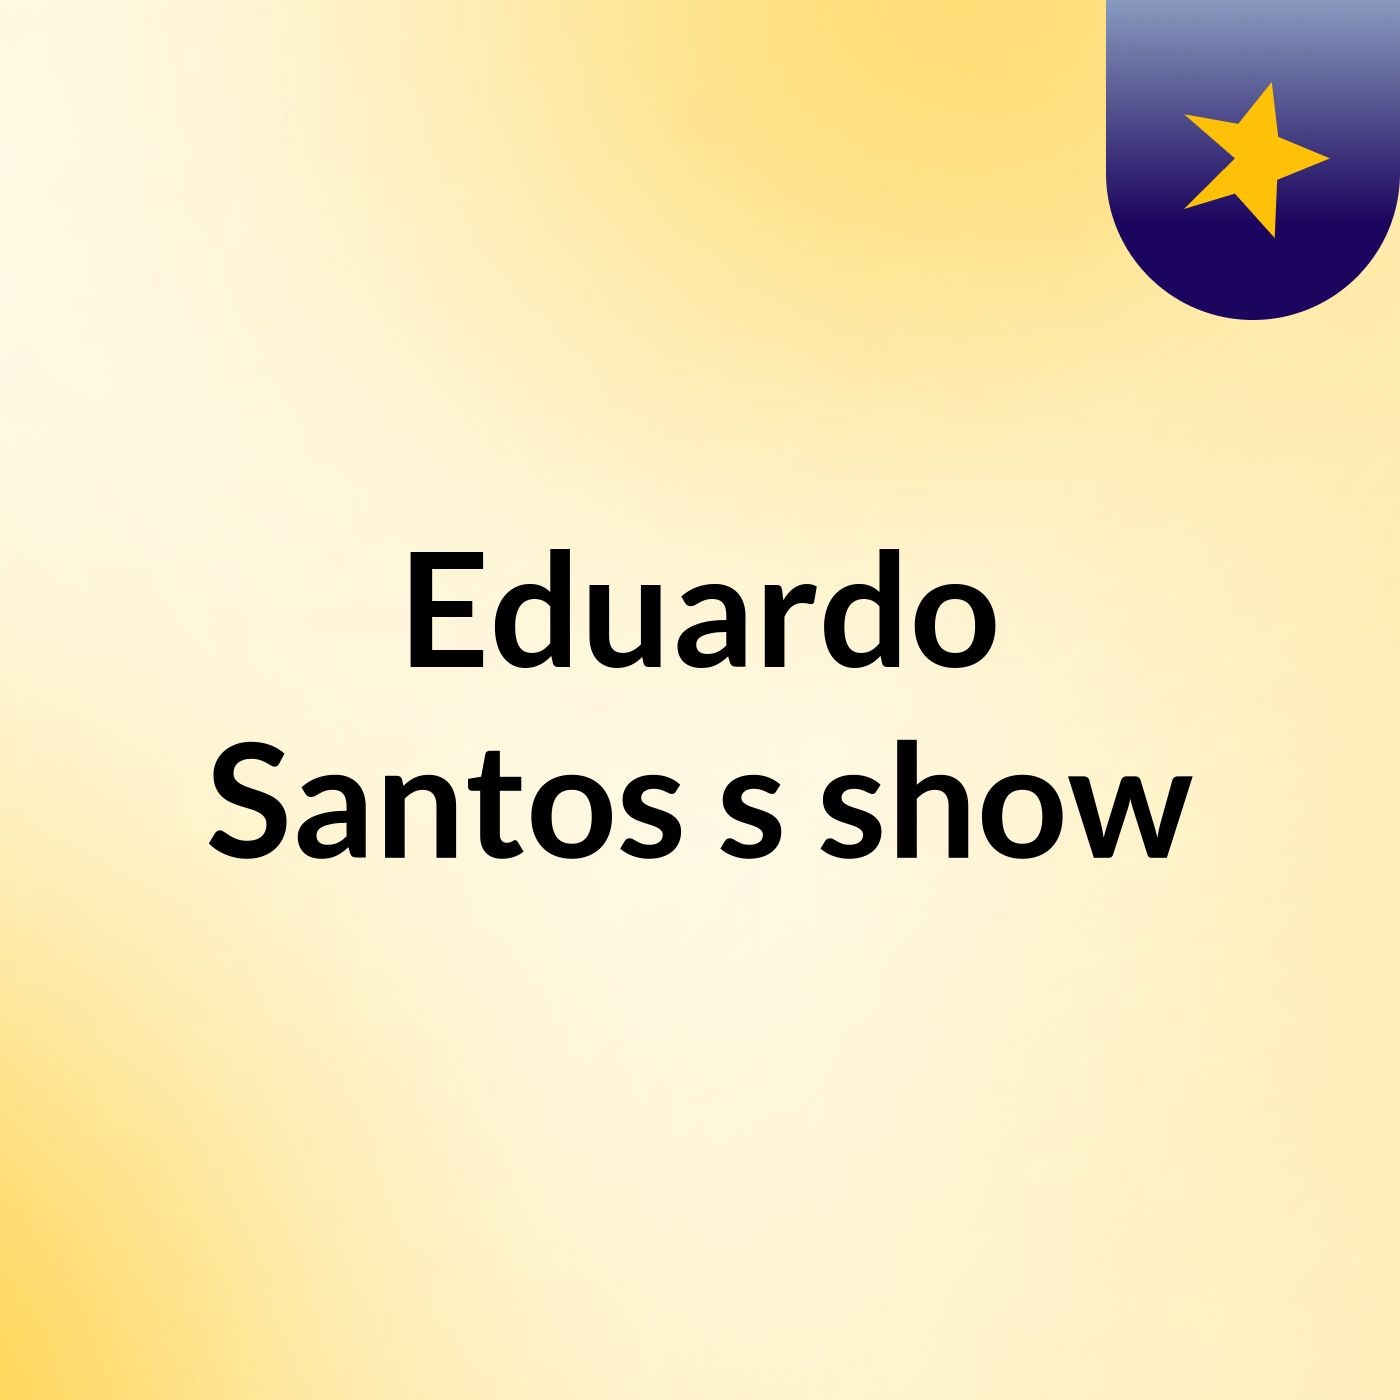 Episódio 32 - Eduardo Santos's show